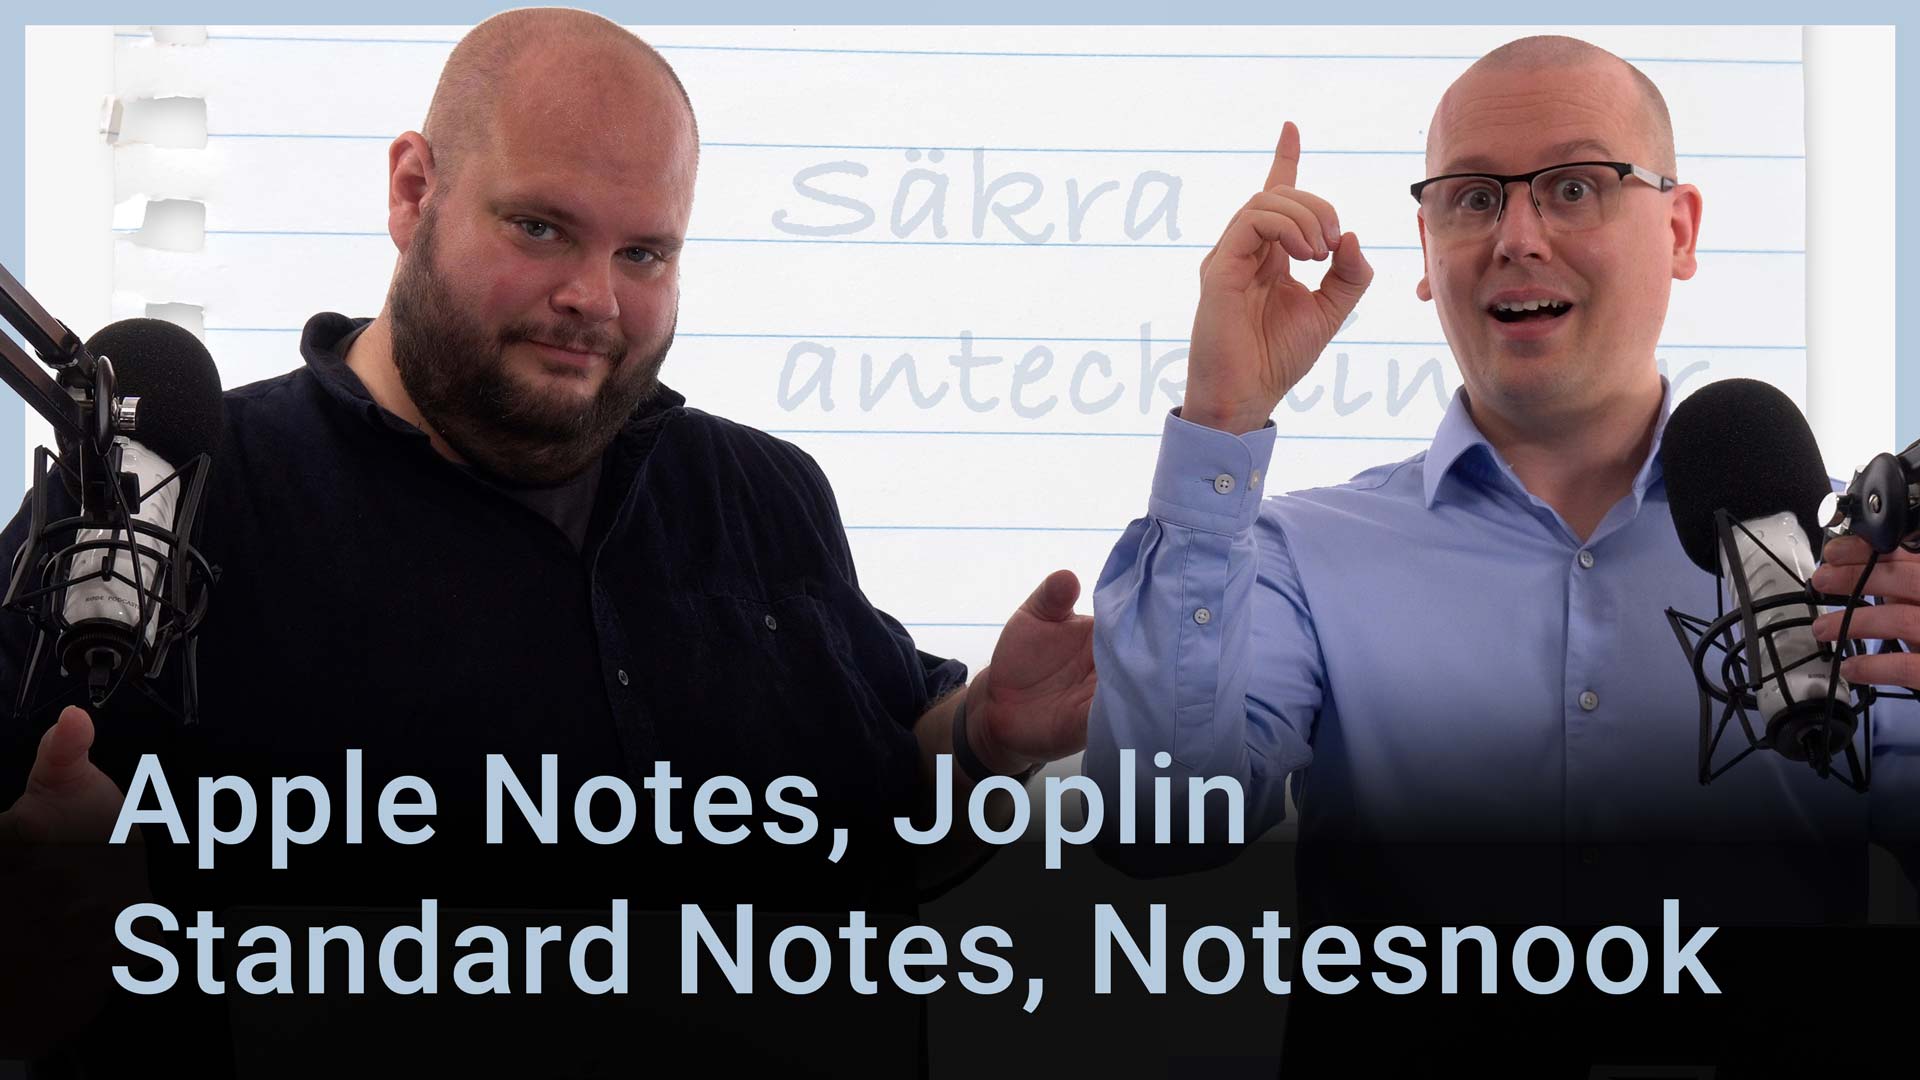 Peter Esse och Karl Emil Nikka står vid sina mikrofoner. Chromes logotyp syns i bakgrunden. Texten ”Apple Notes, Joplin, Standard Notes, Notesnook” är stämplad ovanpå.